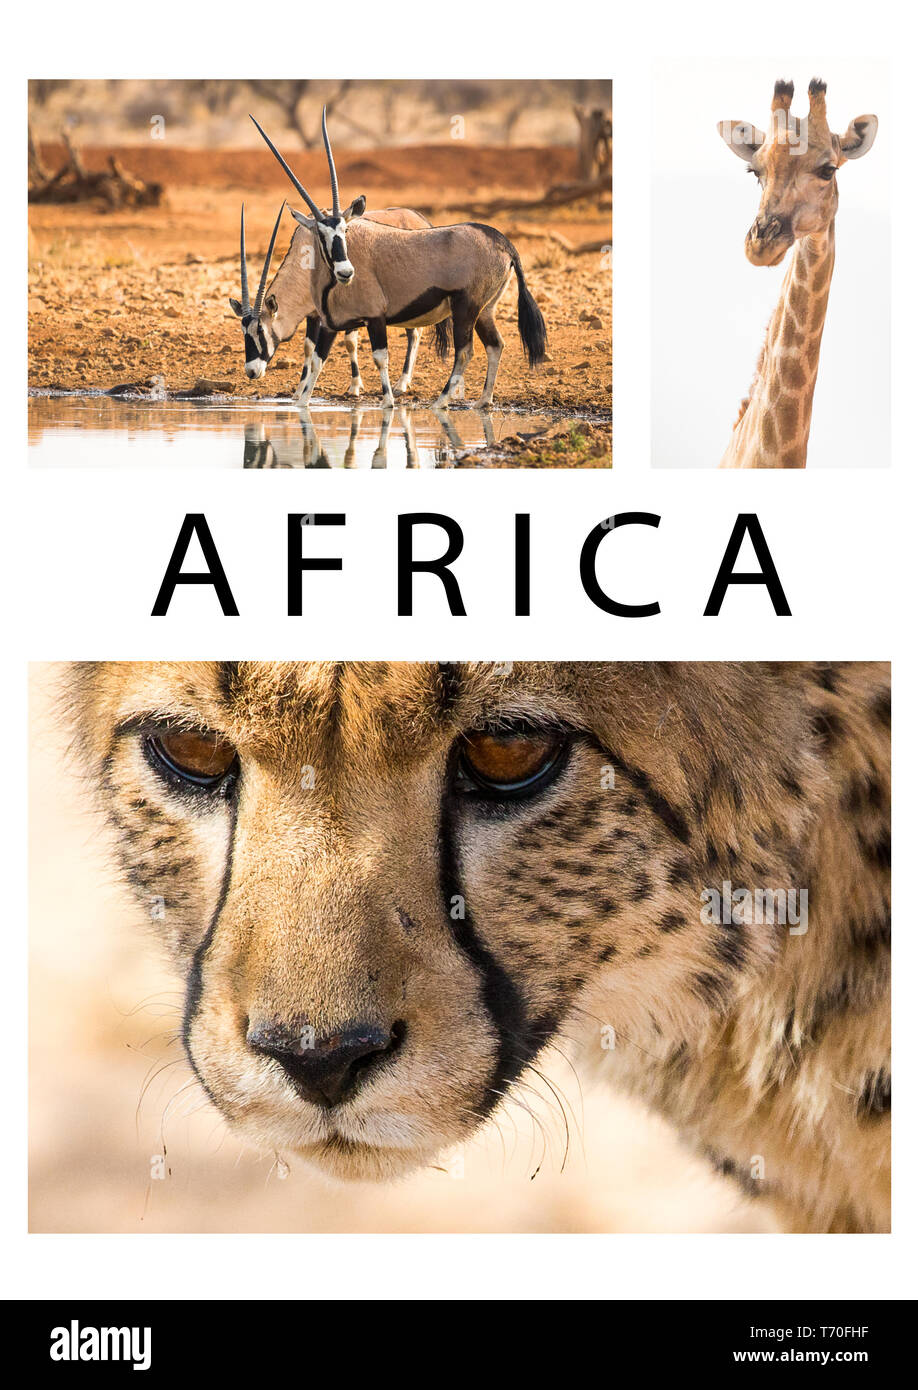 África África o collage de una colección o grupo de imágenes de vida silvestre o las fotos de los guepardos, jirafas y Oryx animales en el medio silvestre de Namibia con texto Foto de stock